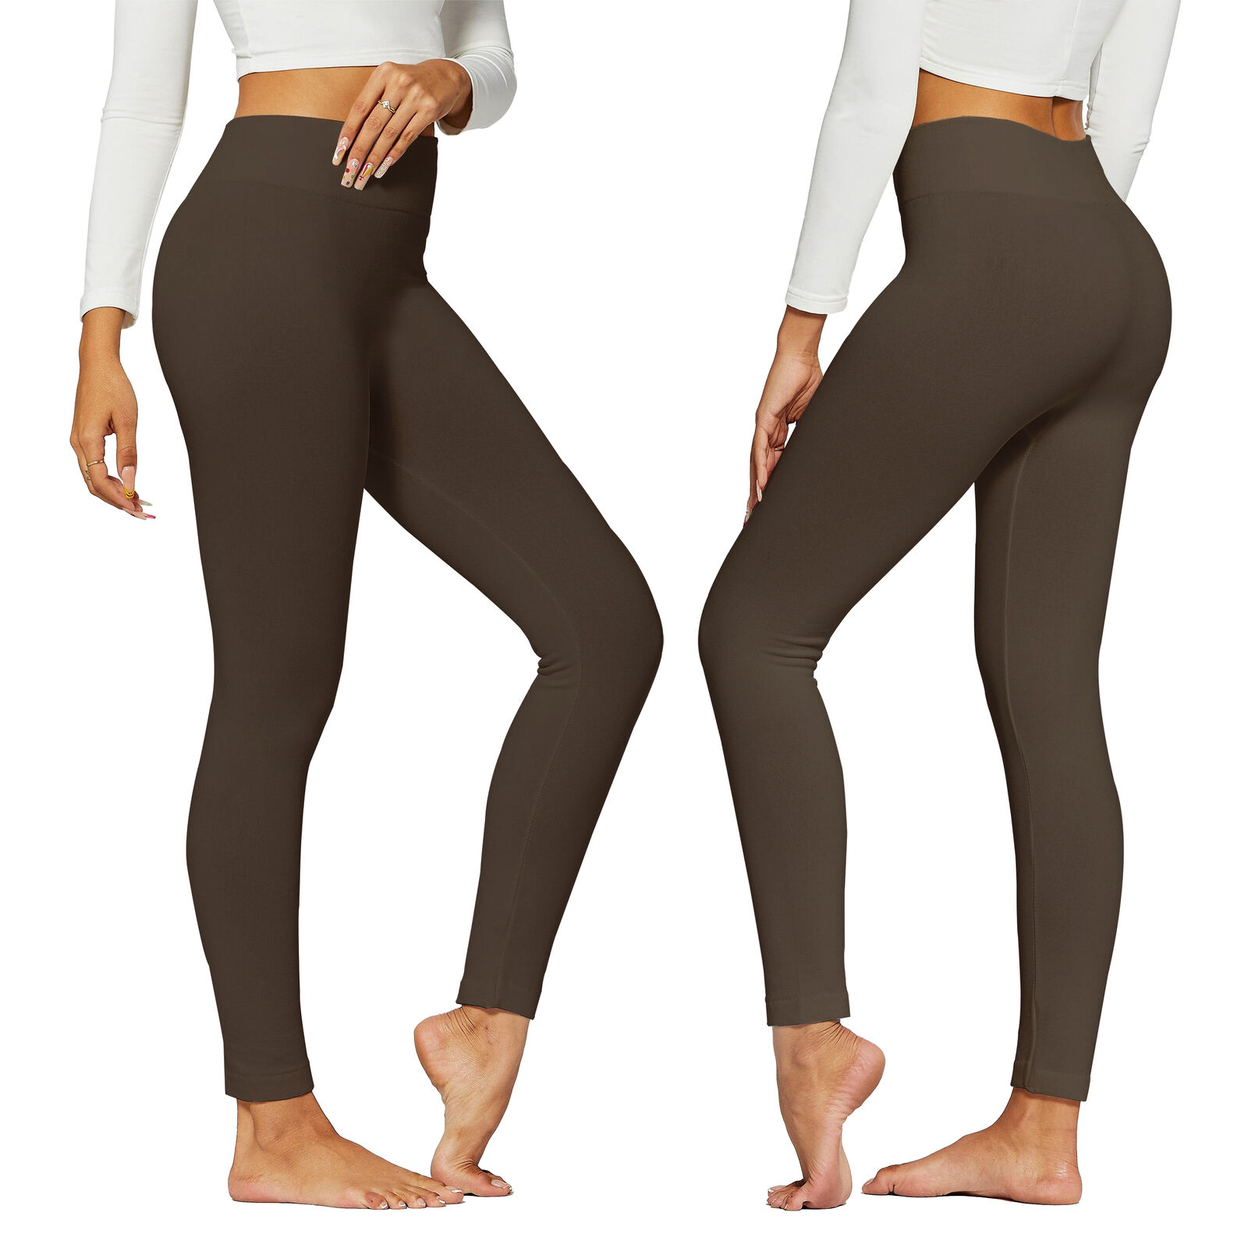 2-Pack: Women's Winter Warm High-Waist Soft Fleece Lined Leggings - Black & Brown, Medium